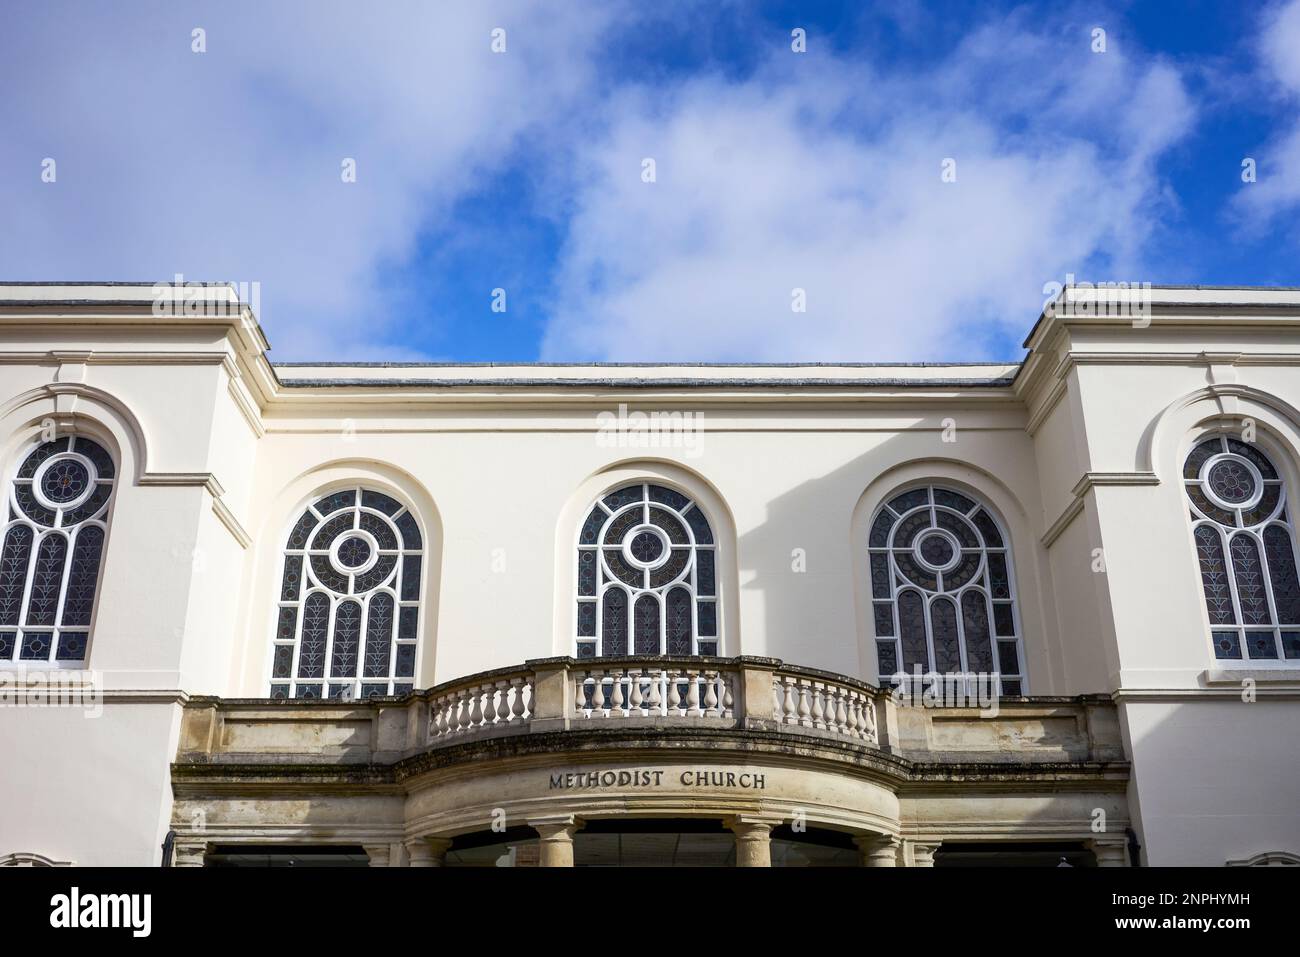 Fenêtres ornées au-dessus de l'entrée d'une église méthodiste avec ciel bleu et nuages derrière Banque D'Images